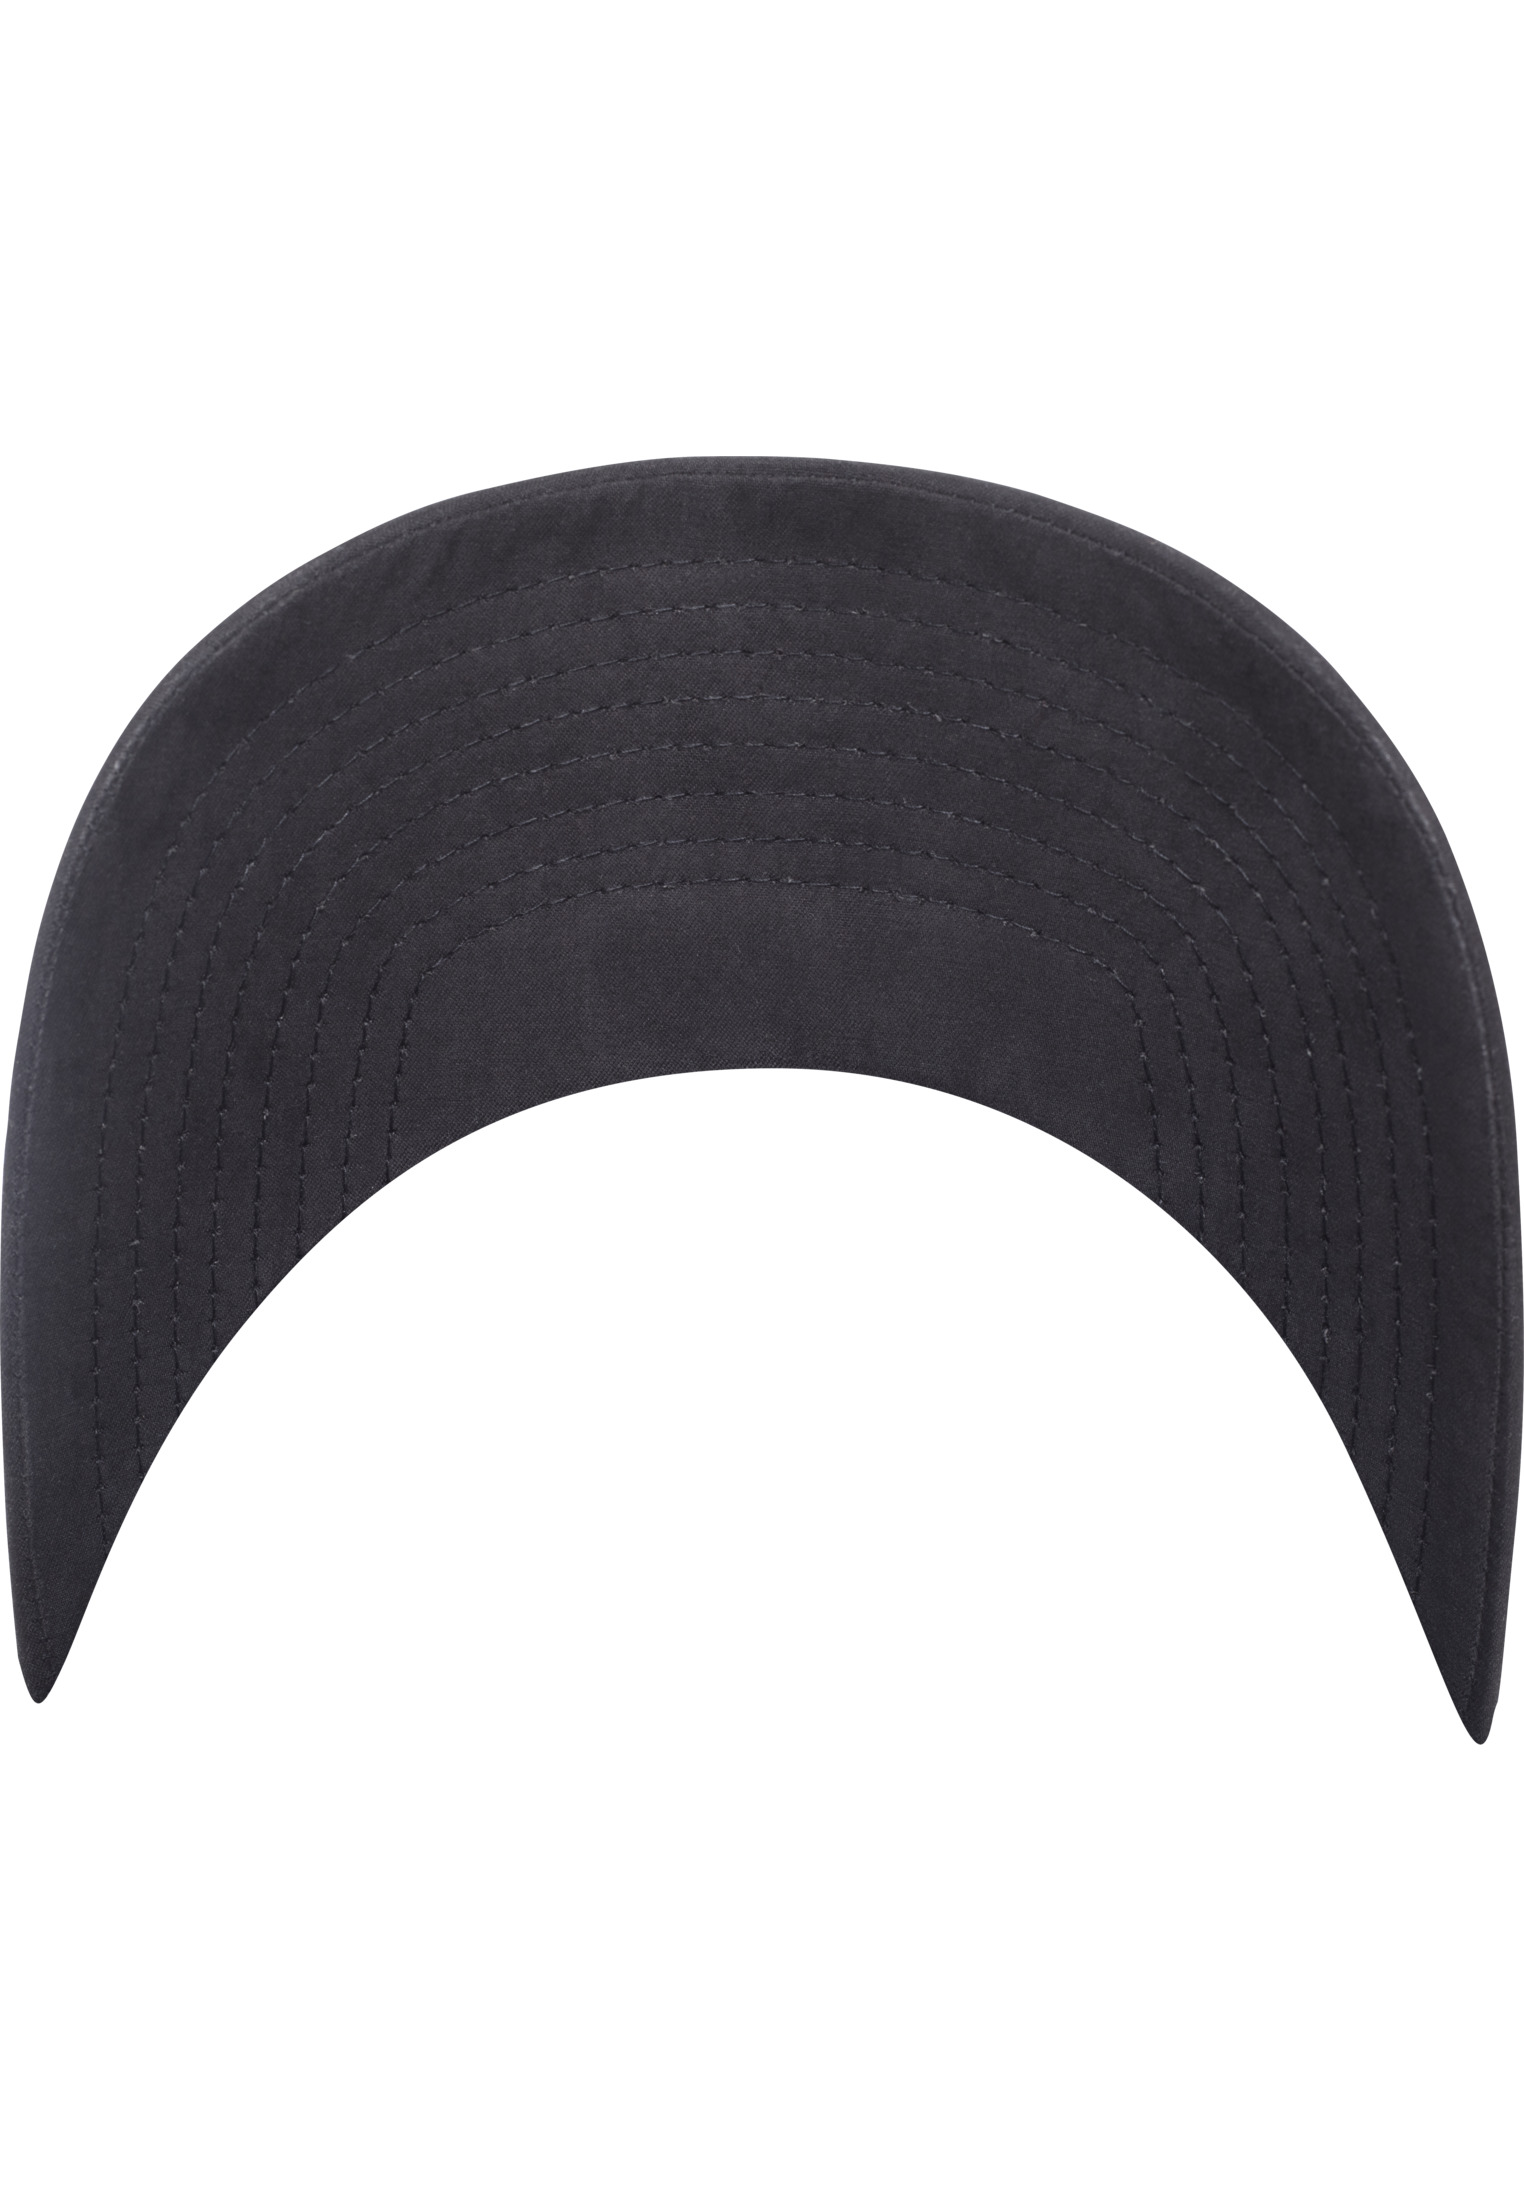 Snapback Ethno Strap Cap in Farbe black